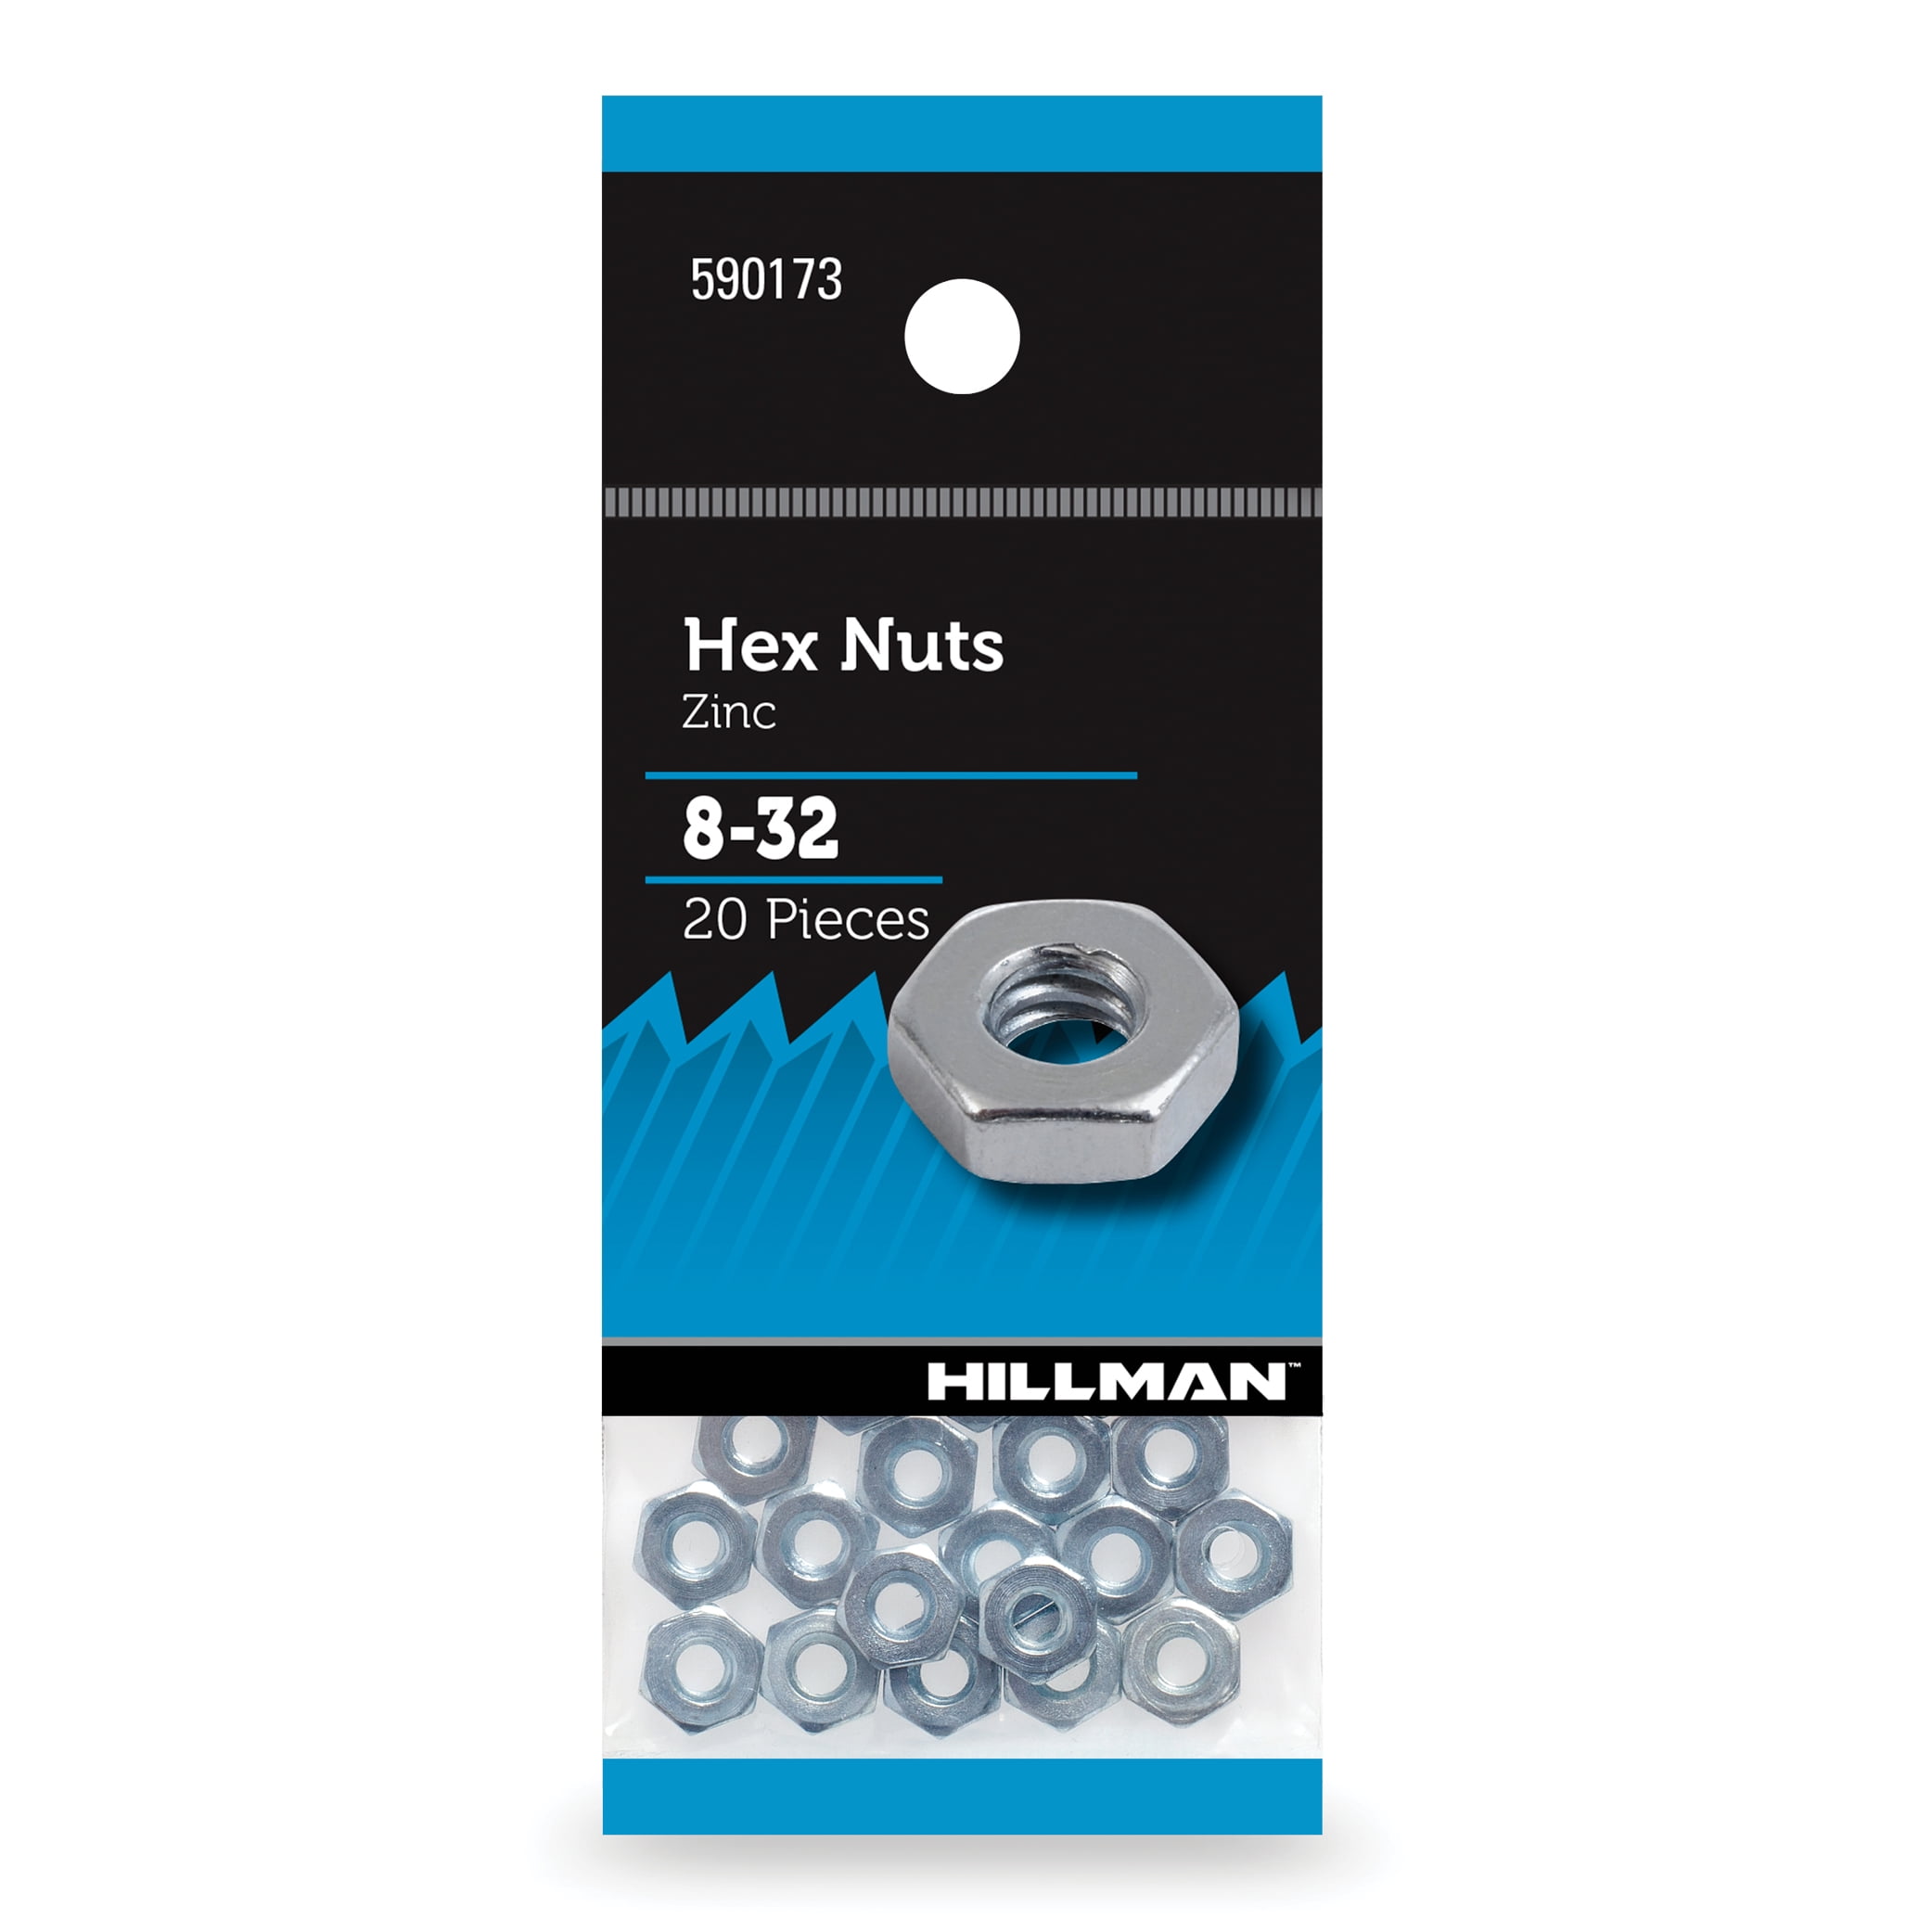 18 Coarse Thread  "10 Nuts"  Grade 8 Zinc 5/16-18 Hex Nut 5/16" 